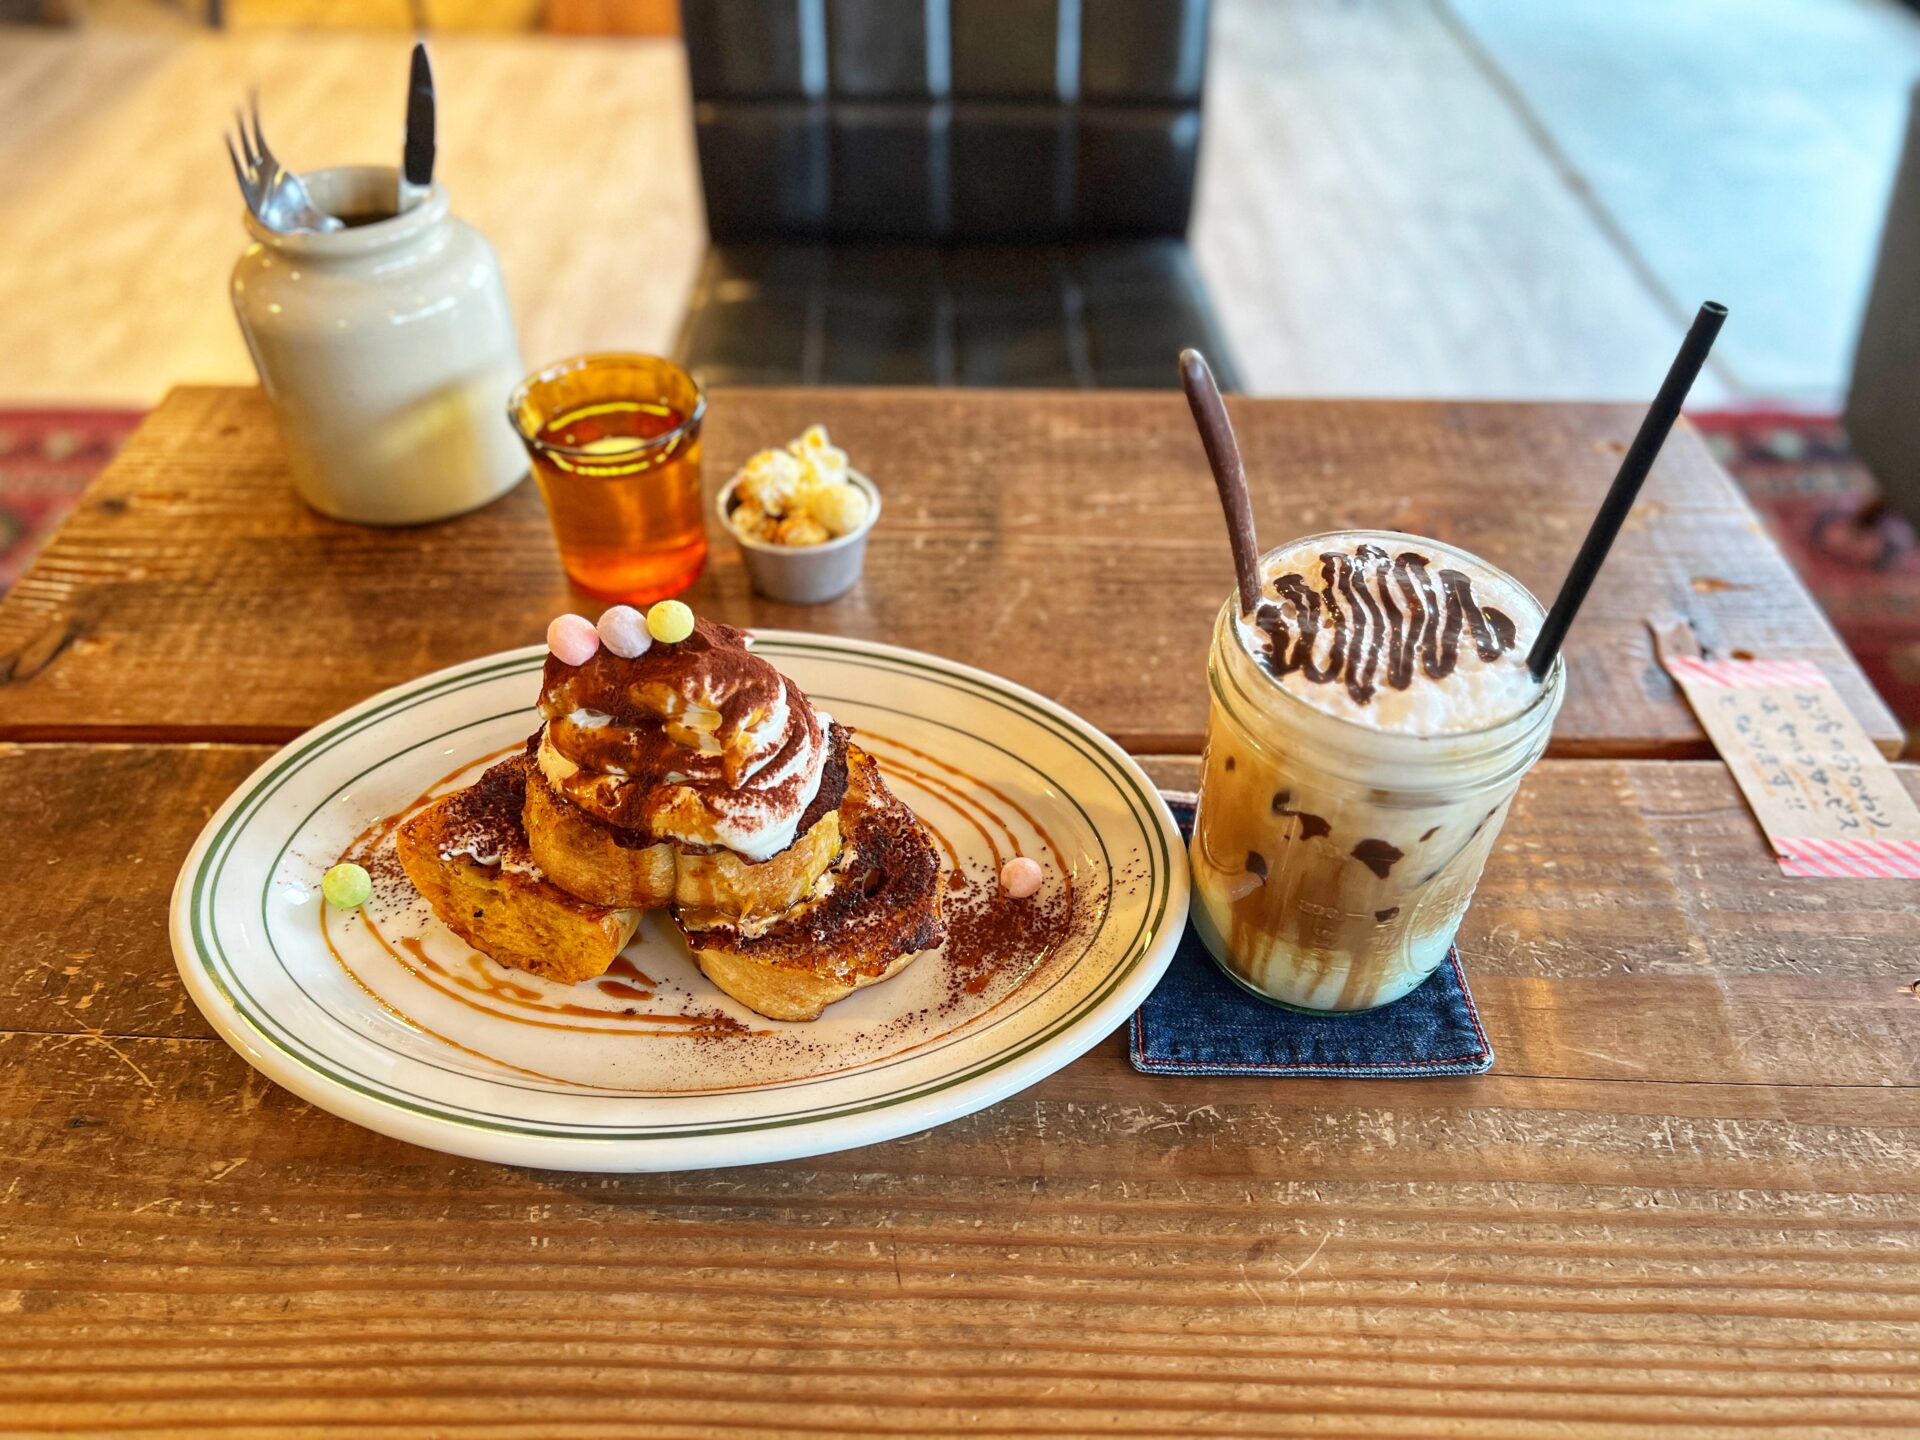 行田市「CAFE EASY LAND」お洒落カフェのチョコミントラテとティラミスフレンチトースト